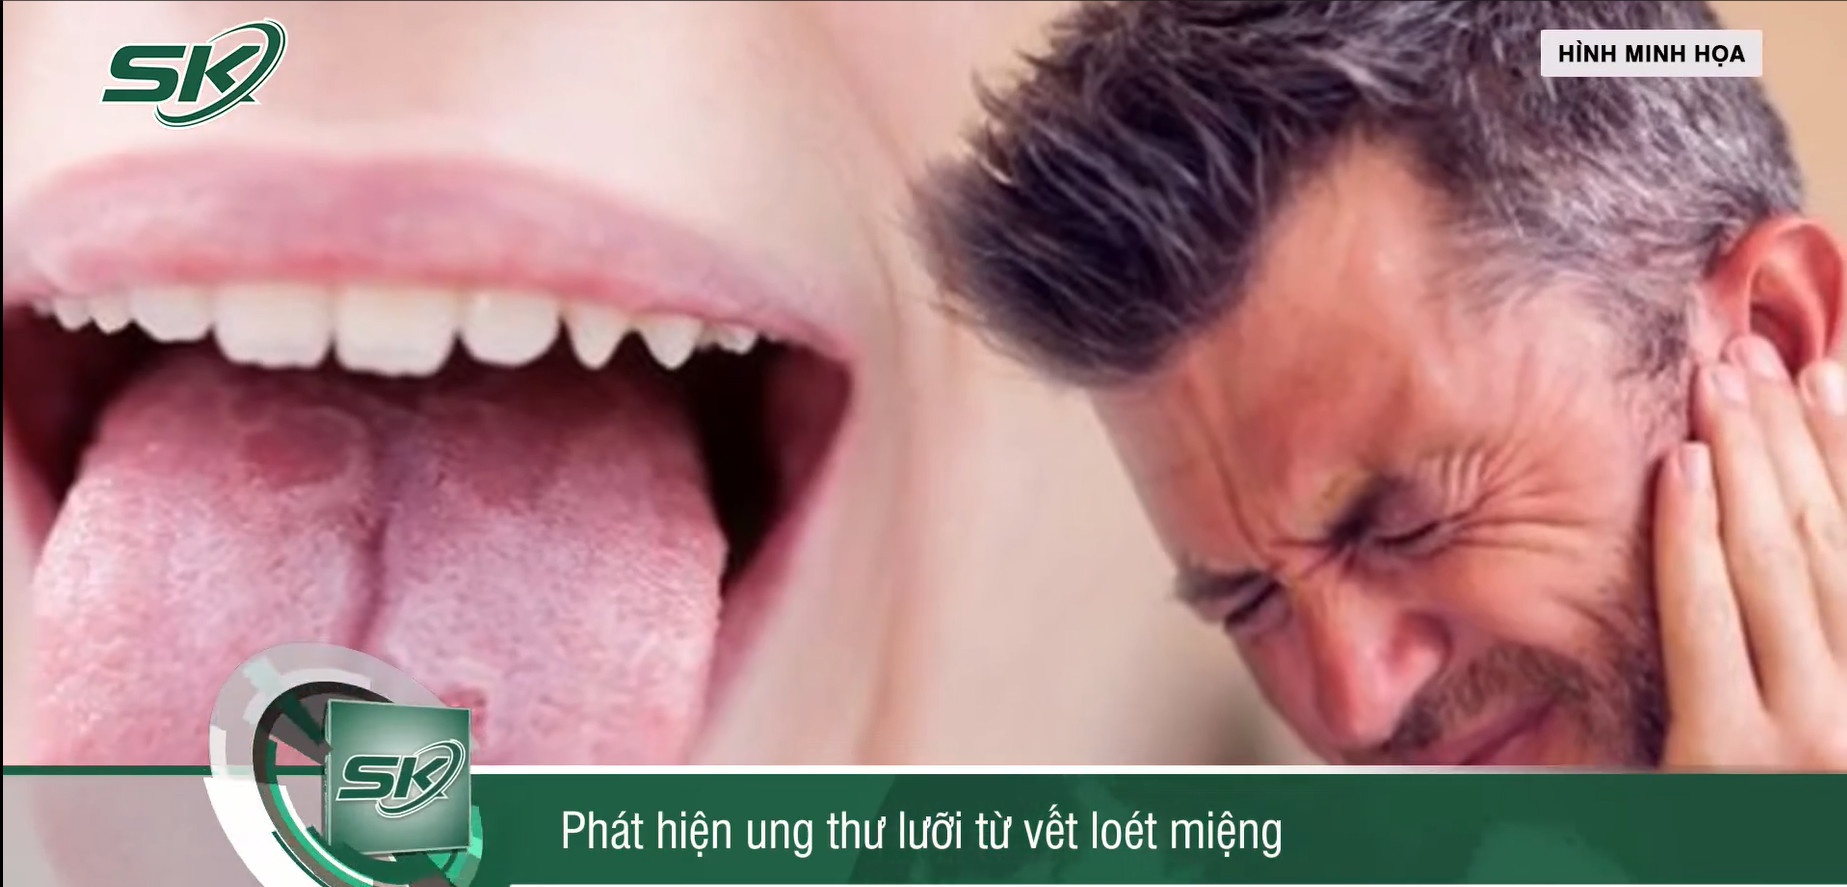 Phát hiện ung thư lưỡi từ vết loét miệng